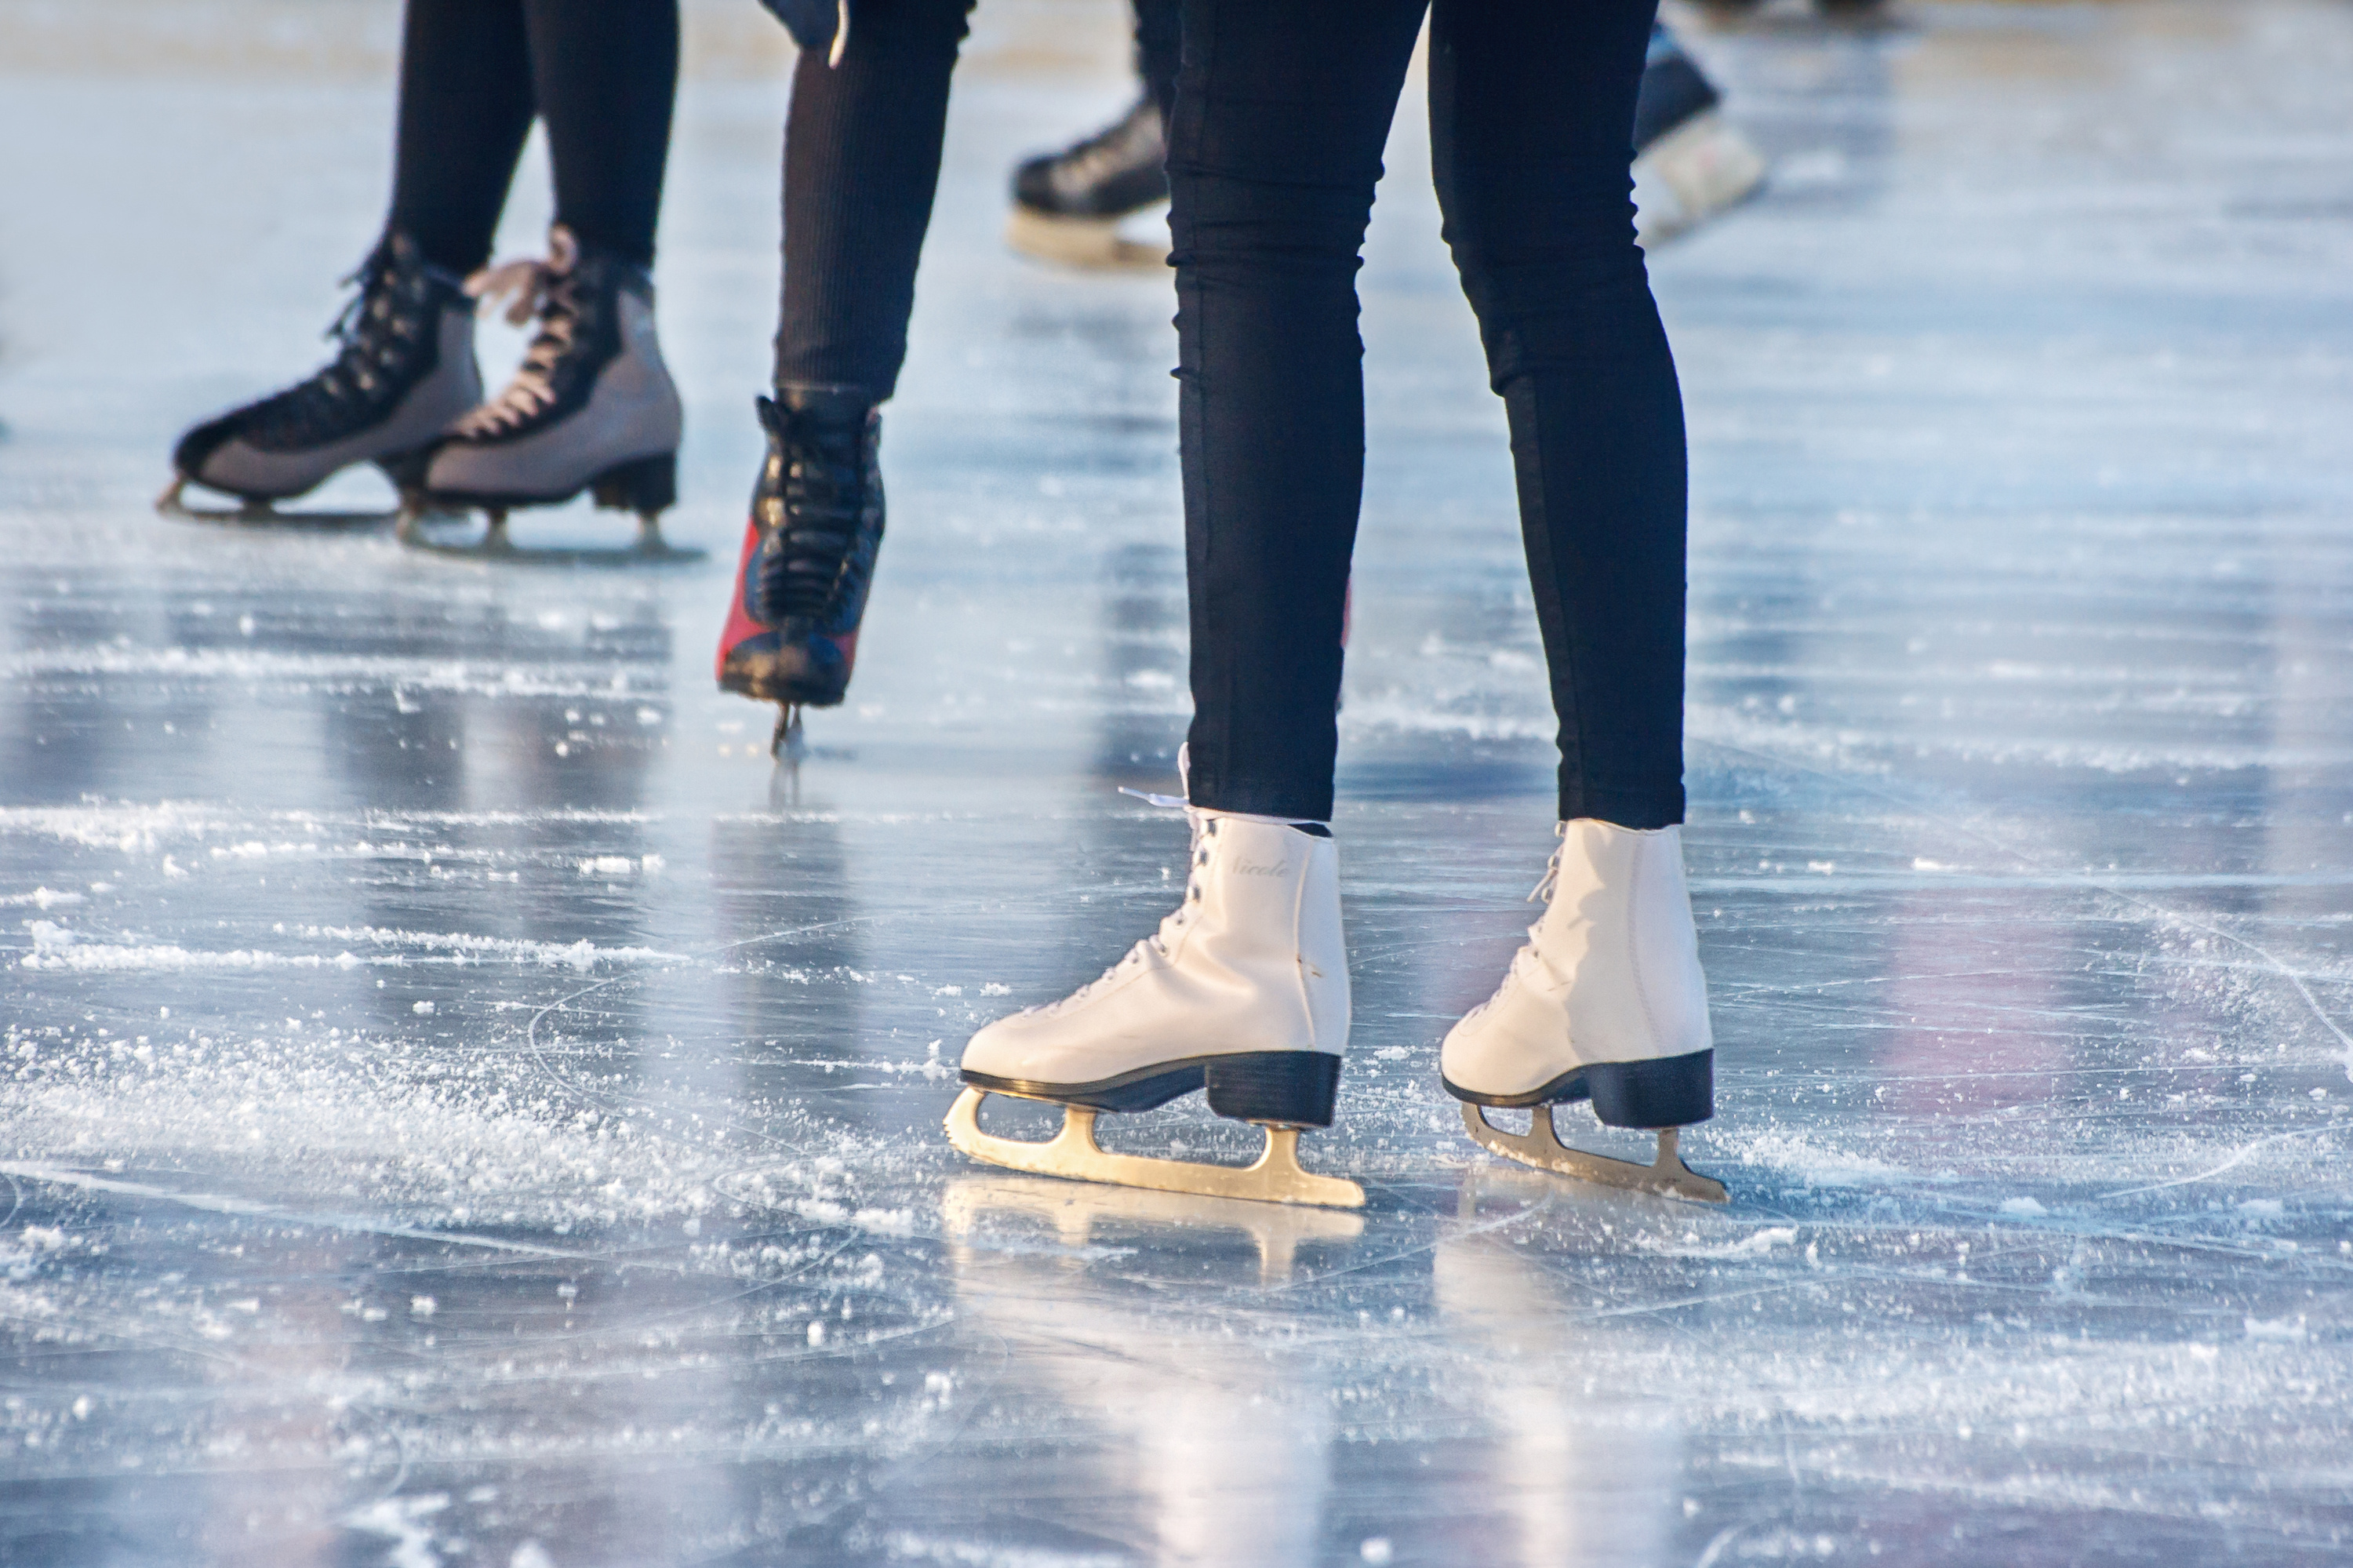 Покататься на коньках сегодня. Катание на коньках. Коньки на льду. Коньки красивые. Каток.